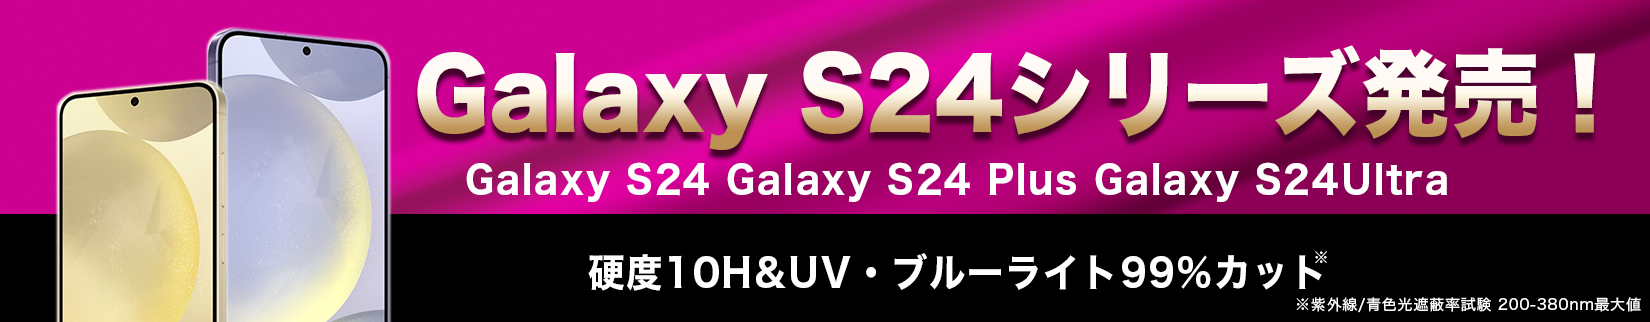 Galaxy S24シリーズ発売